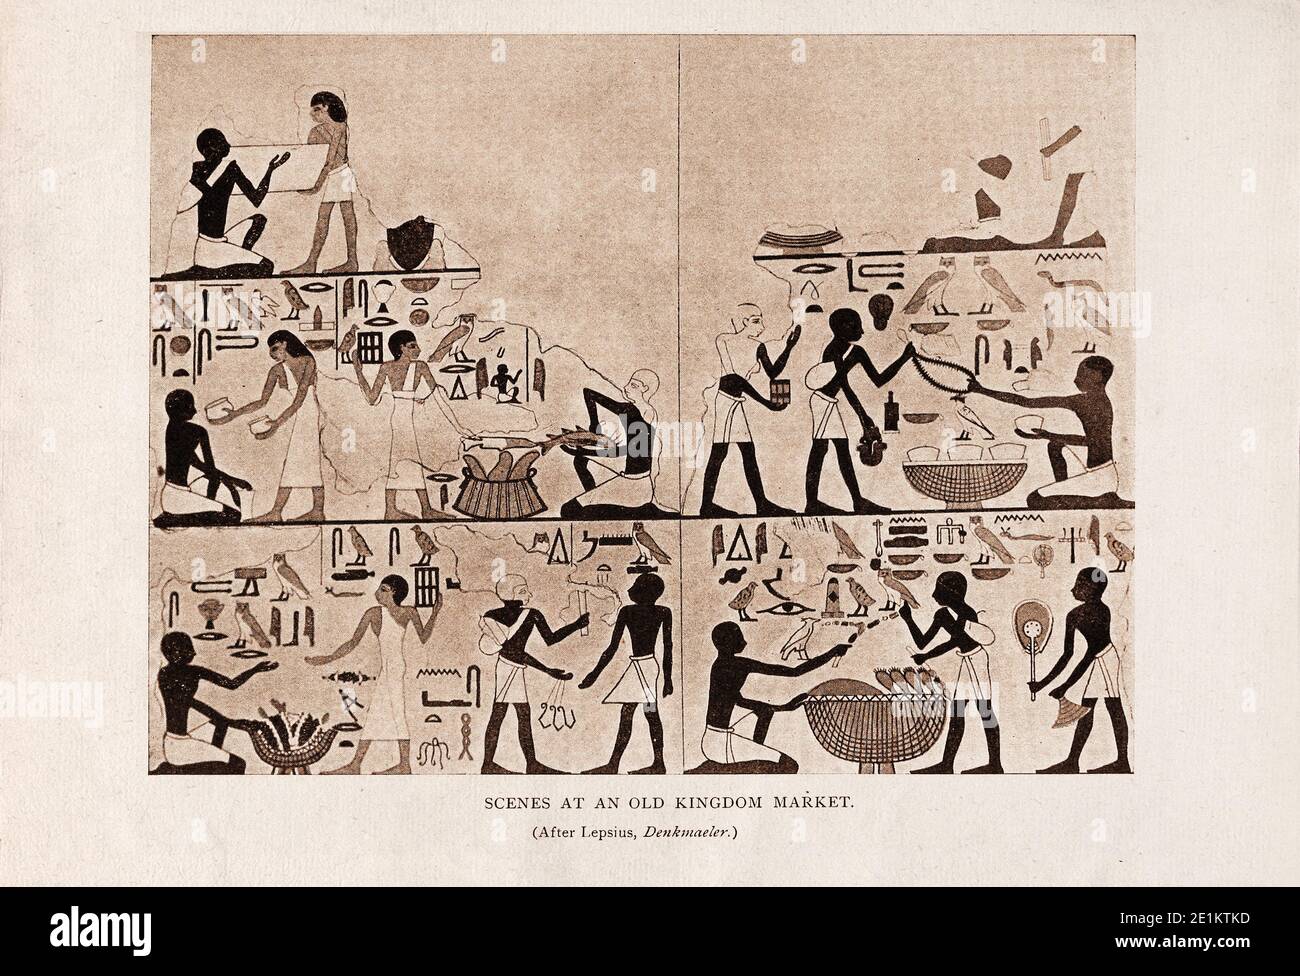 Égypte ancienne. Scènes dans un marché de l'ancien Royaume (d'après Lepsius, Denkmaeler). Banque D'Images